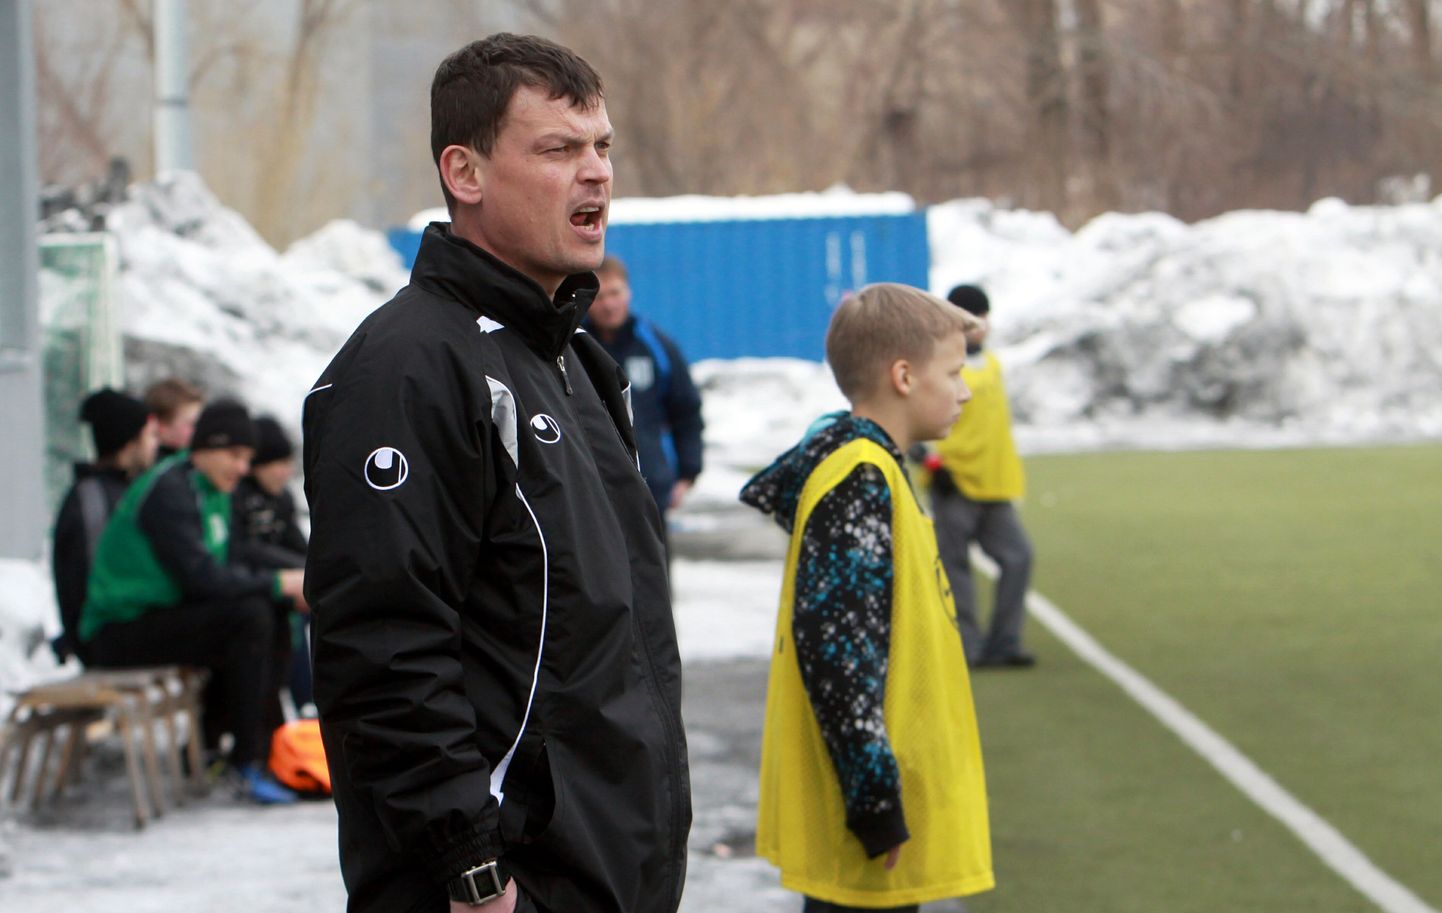 Pärnu Linnameeskond on treener Kalev Pajula juhendamisel sattunud viimastes mängudes võidusoonele. Arhiivifoto.